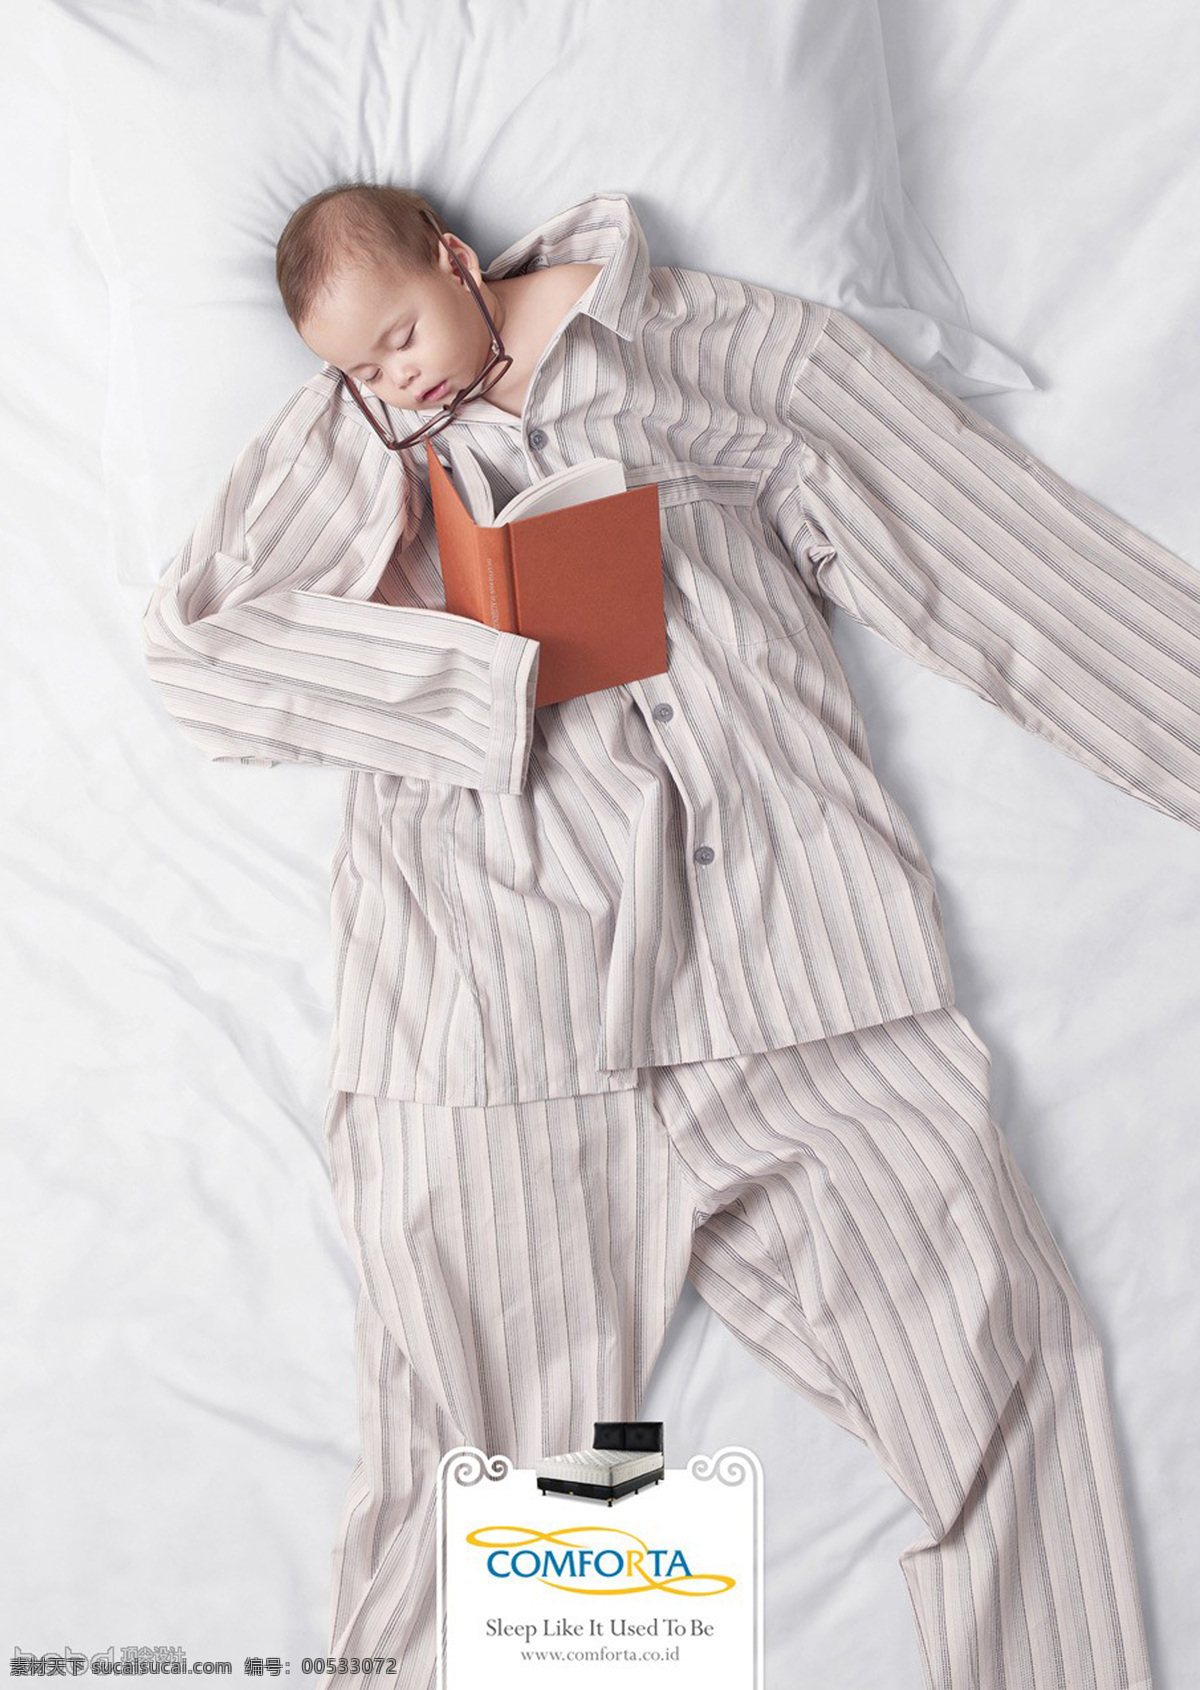 创意广告 床垫创意 睡眠 小孩睡眠 服装创意 海报 内涵 招贴设计